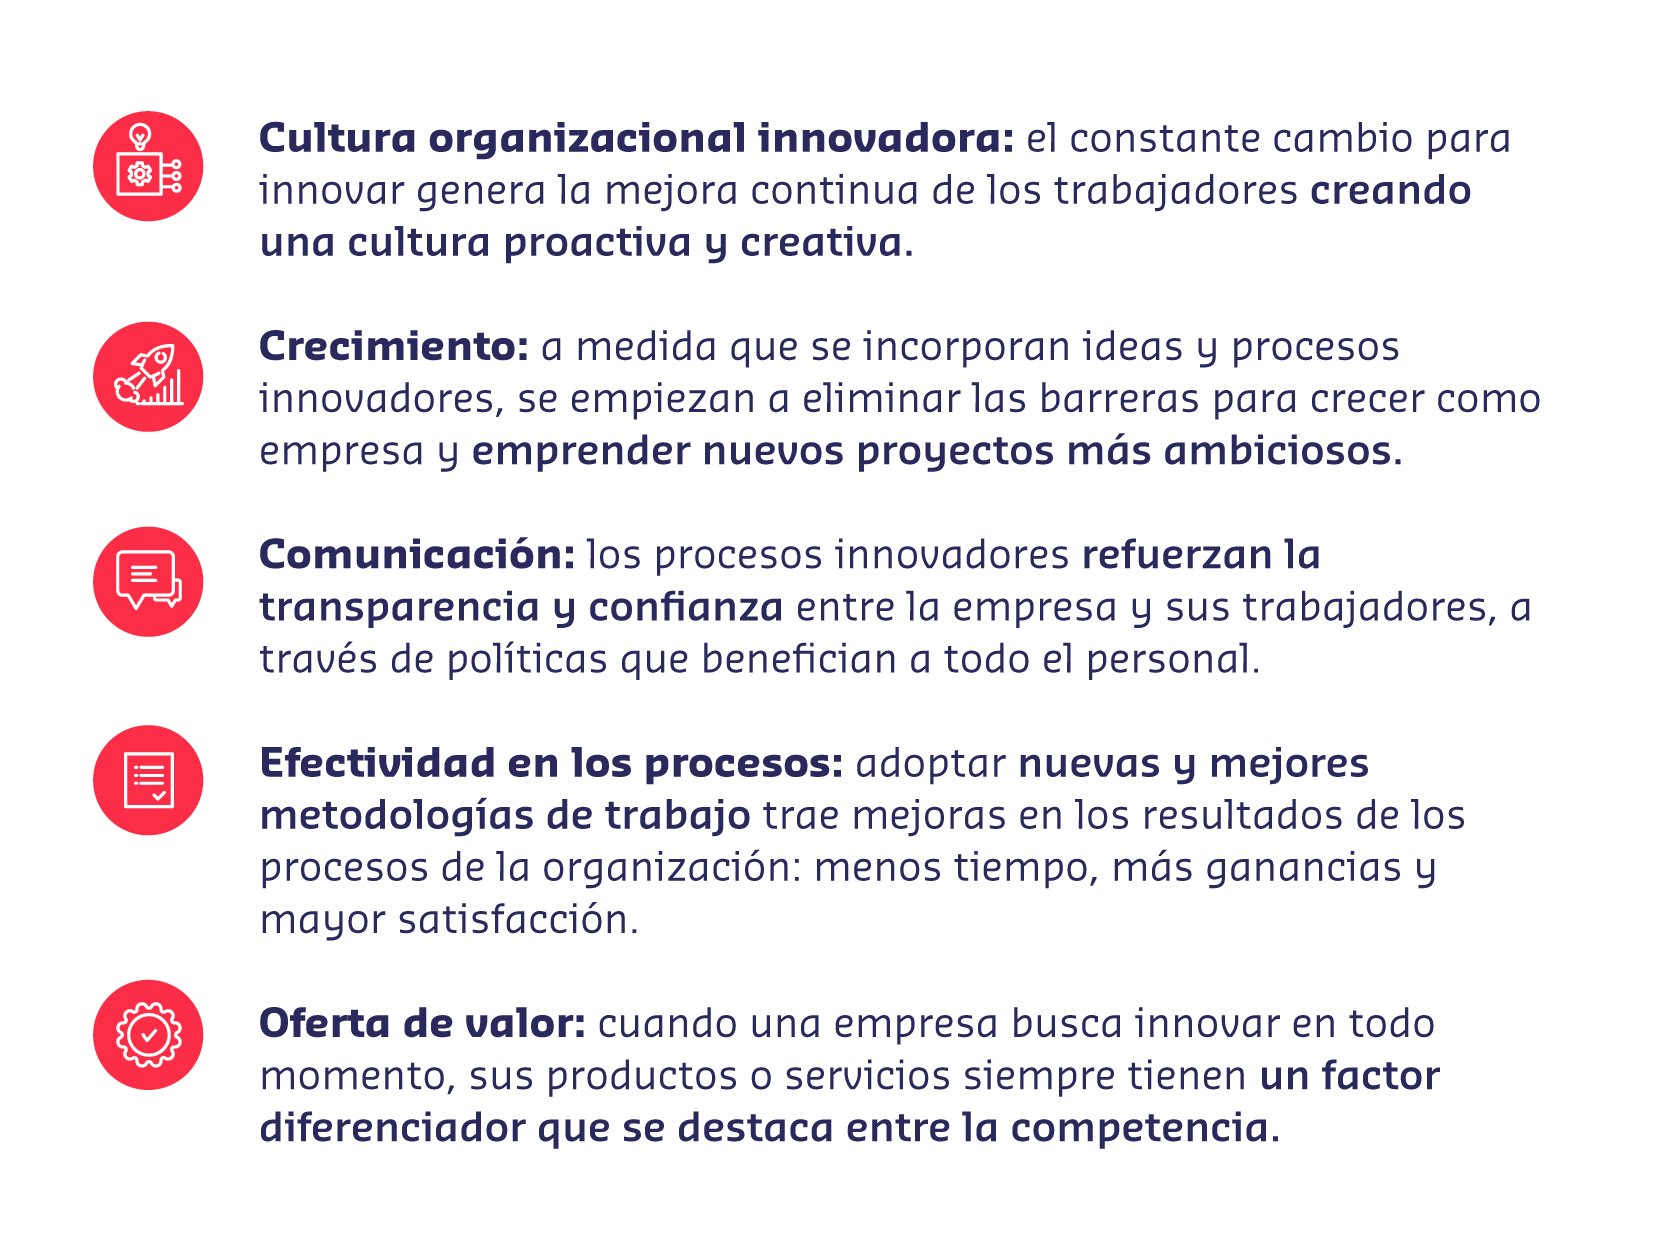 ejemplos de innovación organizacional